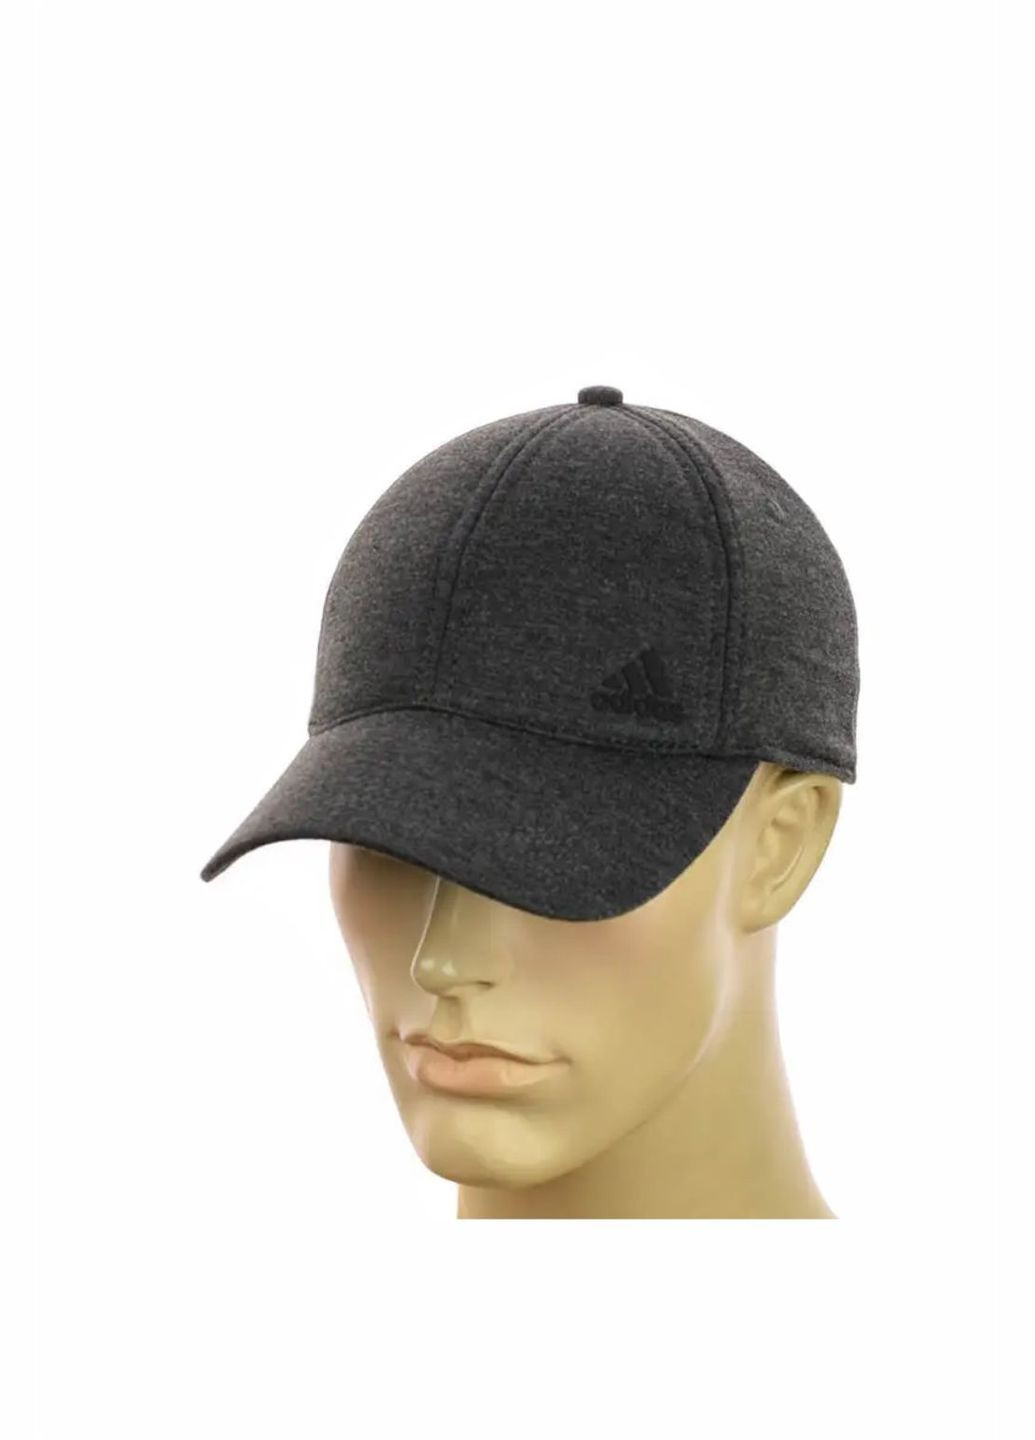 Трикотажная мужская кепка на резинке Adidas / Адидас No Brand чоловіча кепка закрита (278279307)